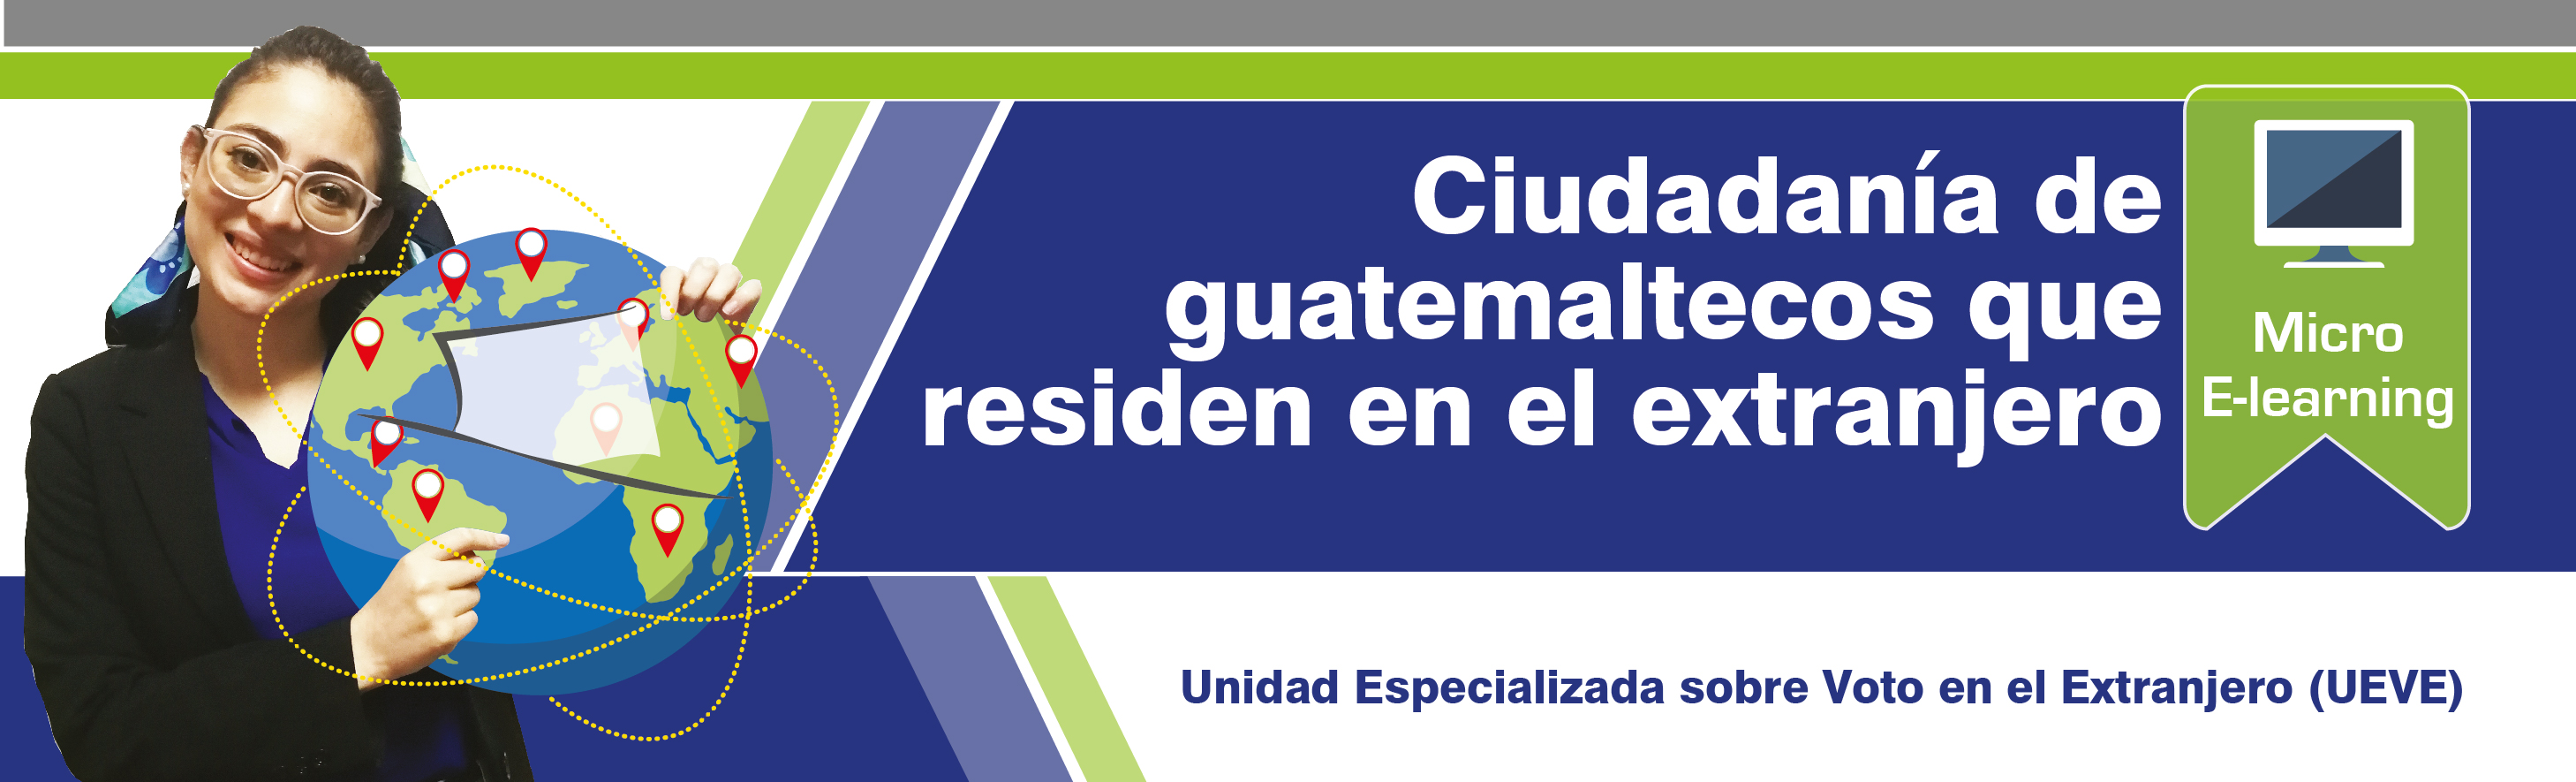 Ciudadanía de guatemaltecos que residen en el extranjero G